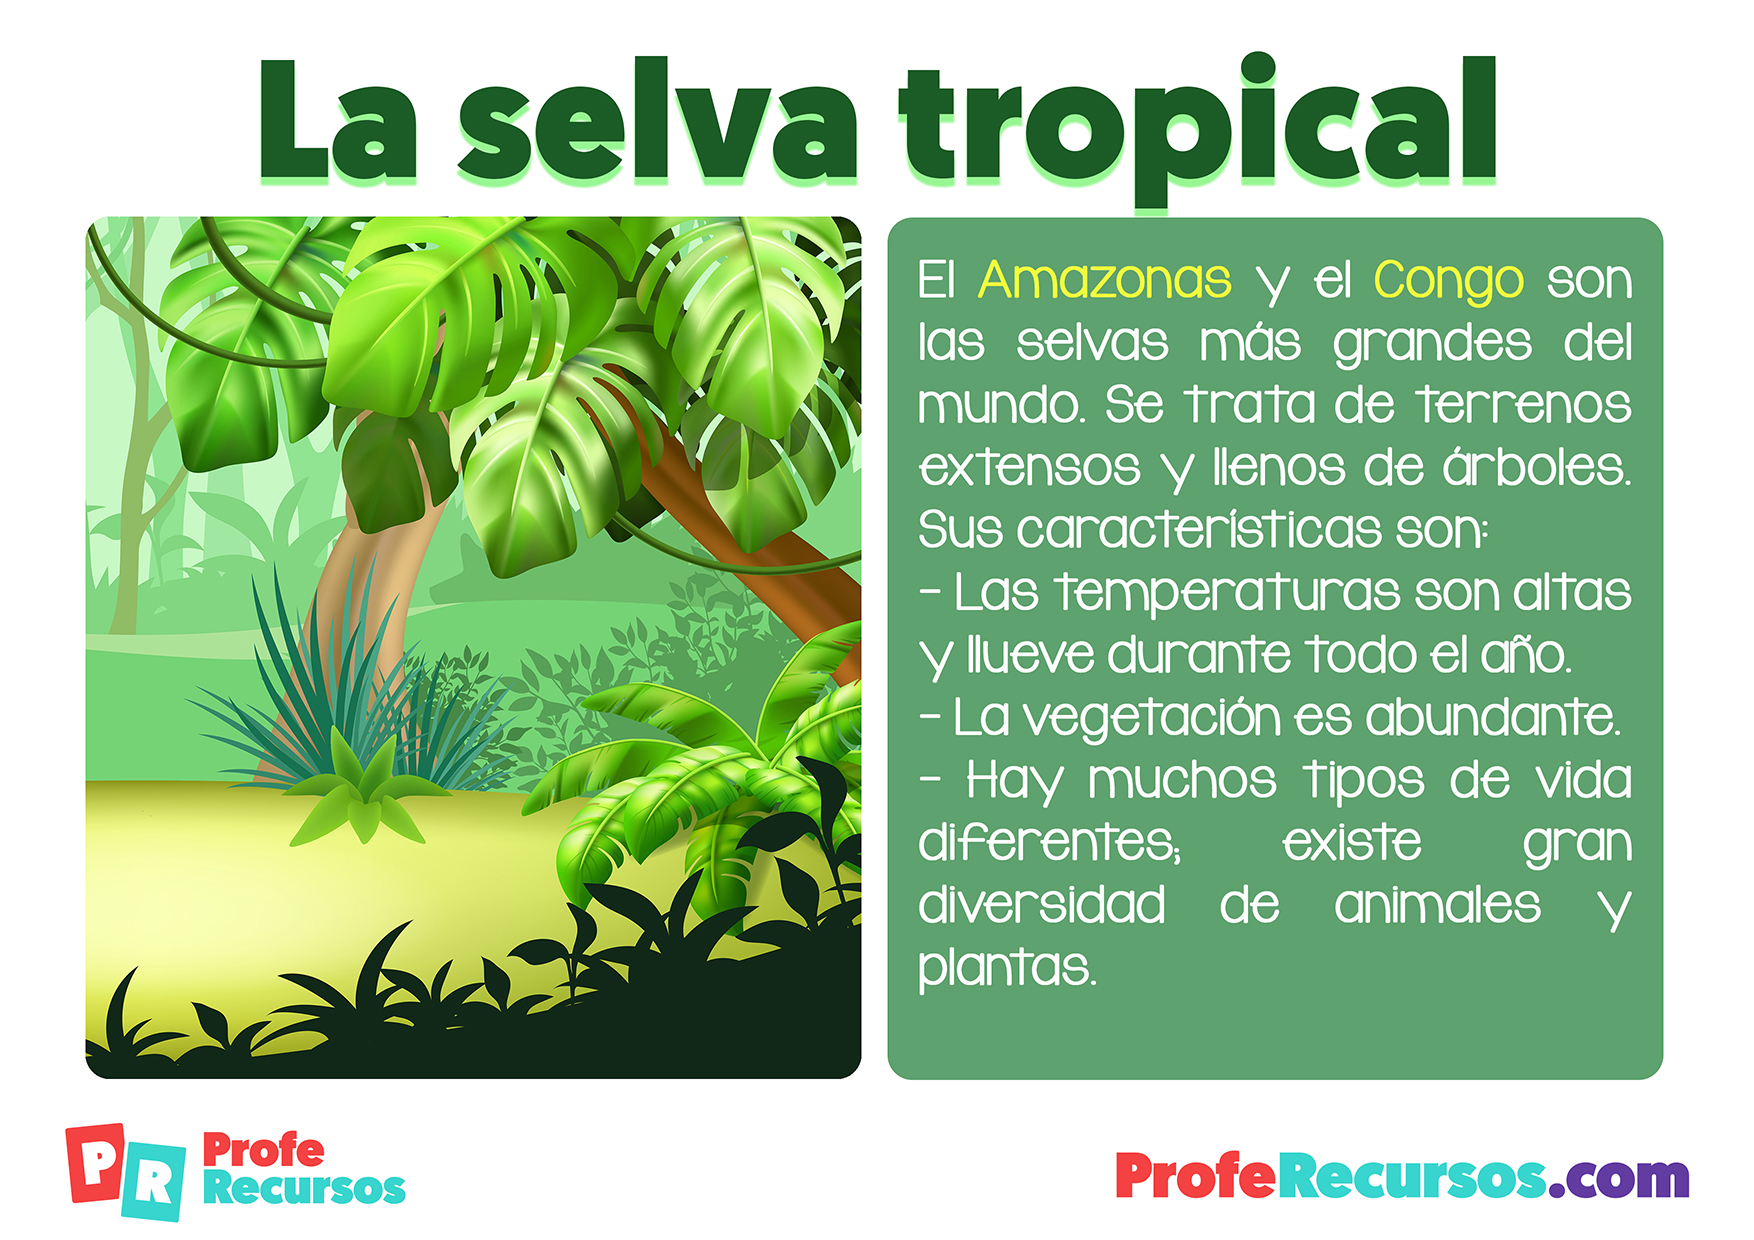 Ecosistema la selva tropical